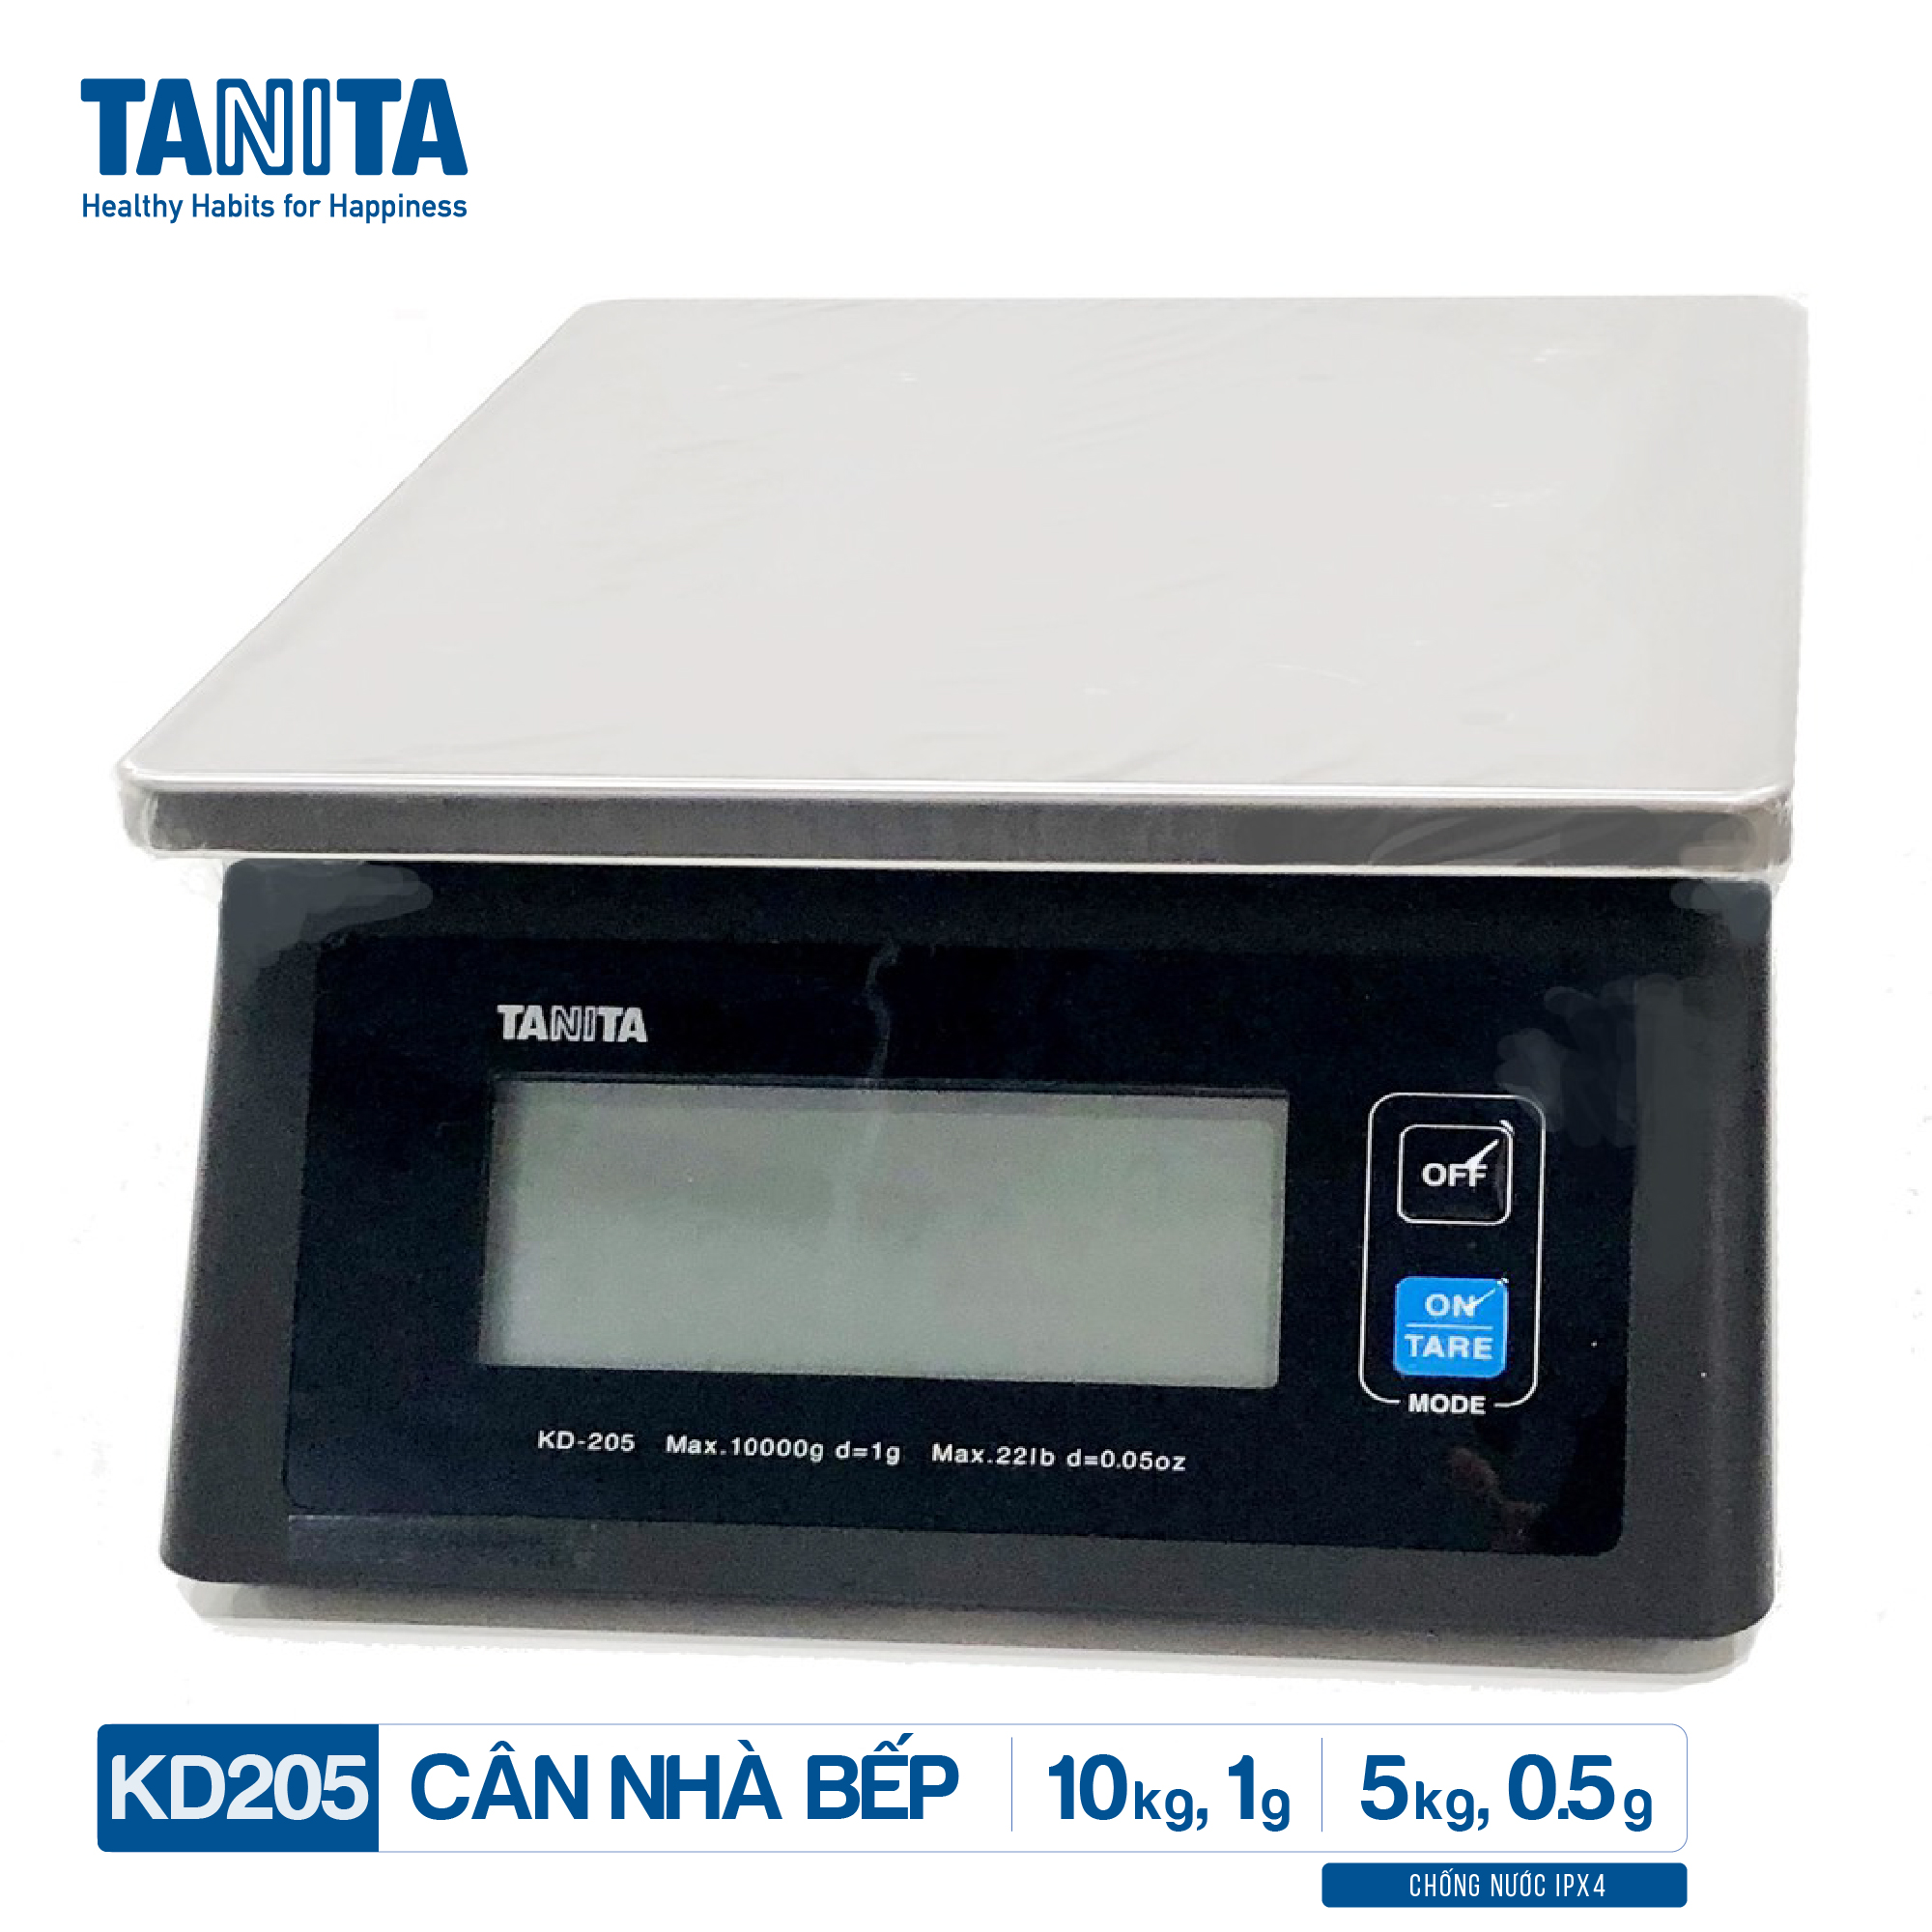 Cân tiểu ly điện tử nhà bếp chống nước IPX4 TANITA KD205,Chính hãng nhật bản (10kg-0.5g)có trừ bì,bền đẹp,chính xác,sử dụng làm bánh,cân tổ yến,cân hải sản và y học,tặng kèm pin